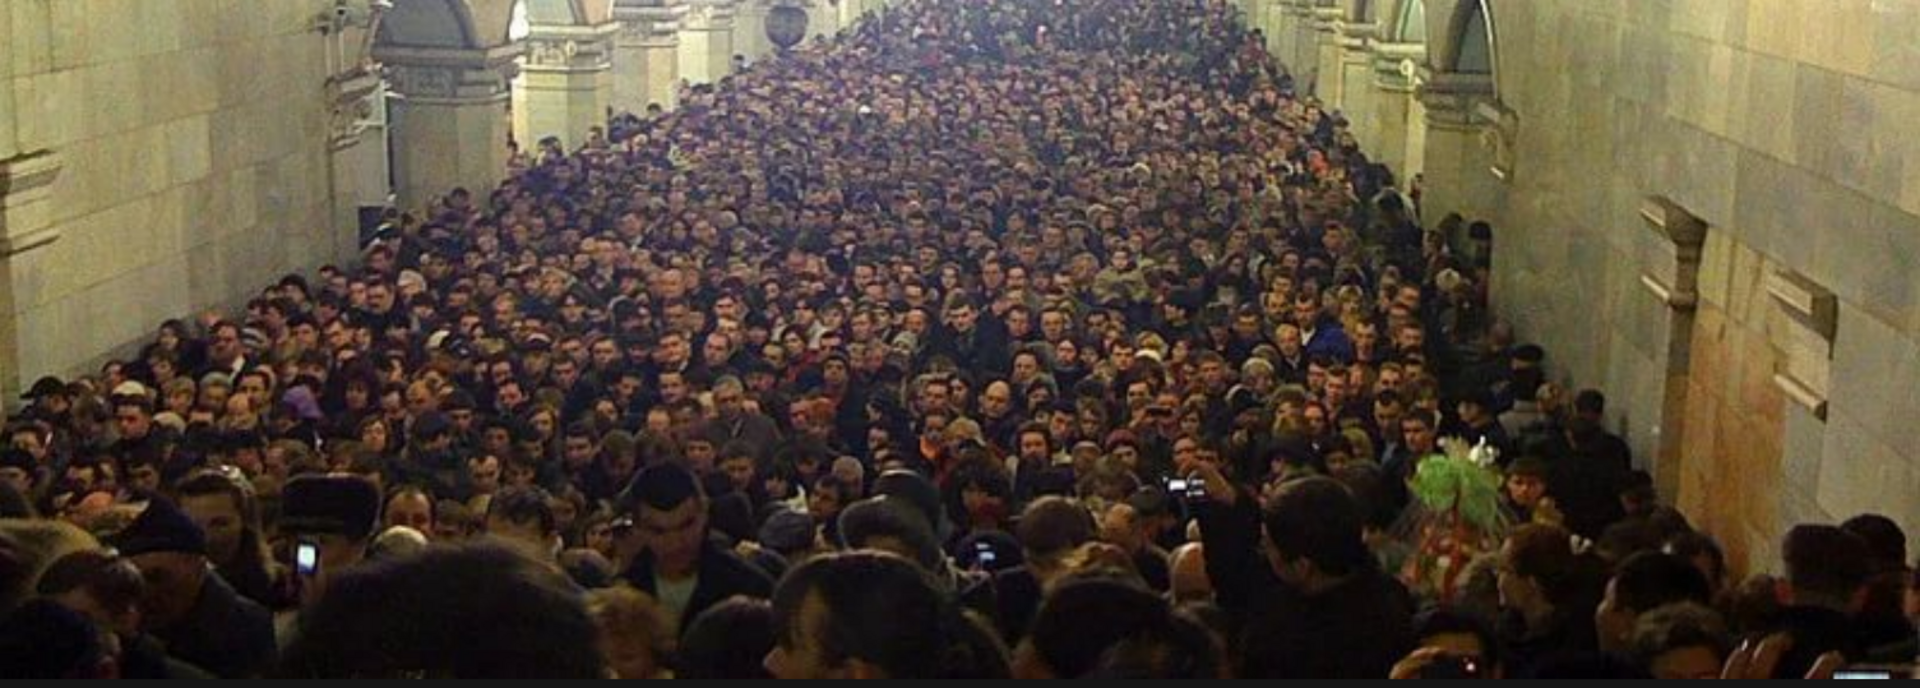 Много людей в метро. Давка в метро час пик Москве. Час пик в метро в Москве. Толпа людей в метро. Московское метро толпа.